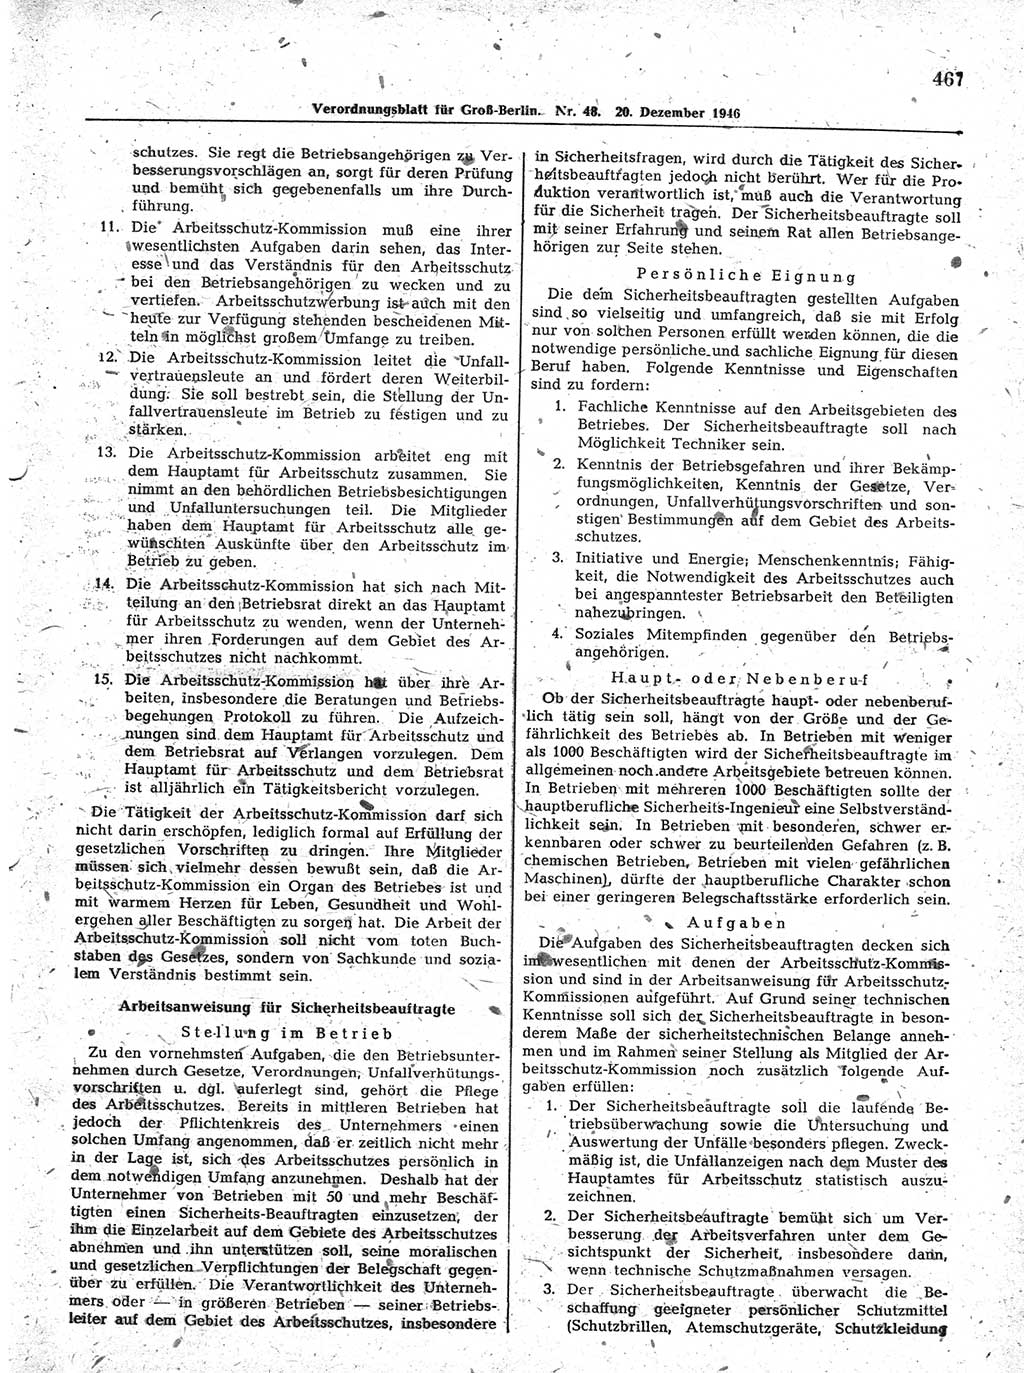 Verordnungsblatt (VOBl.) der Stadt Berlin, für Groß-Berlin 1946, Seite 467 (VOBl. Bln. 1946, S. 467)